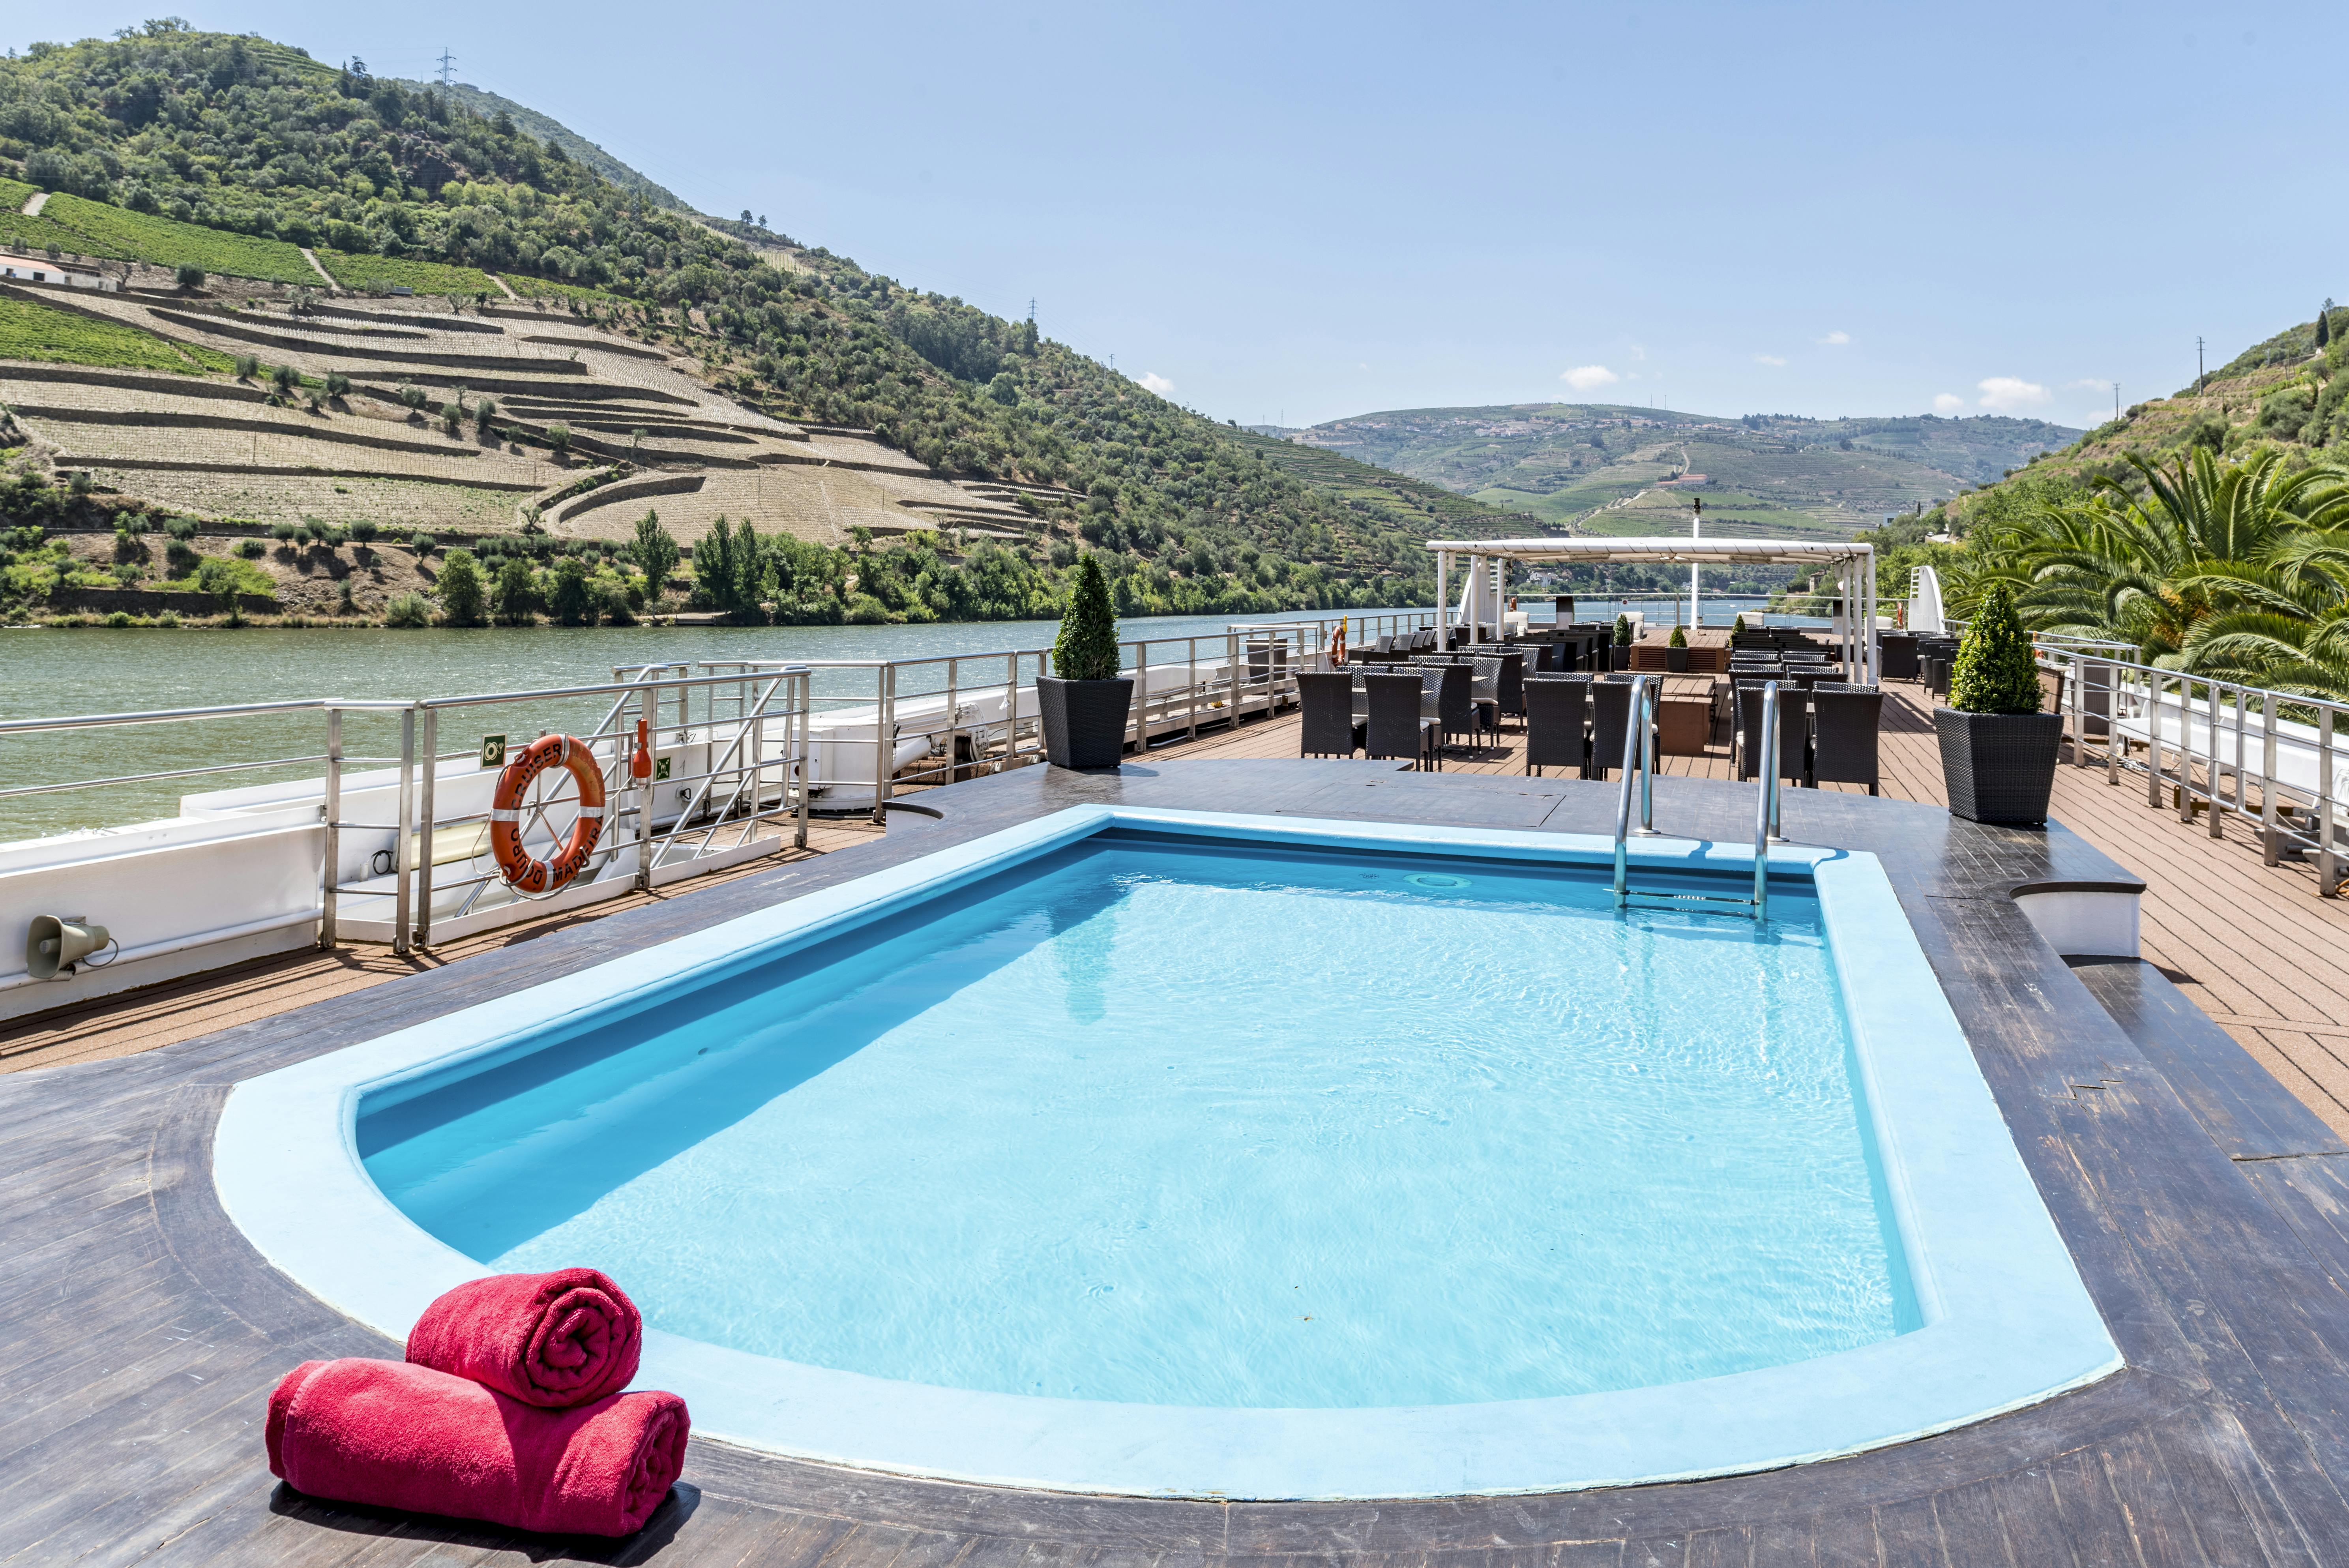 Douro Queen Pool